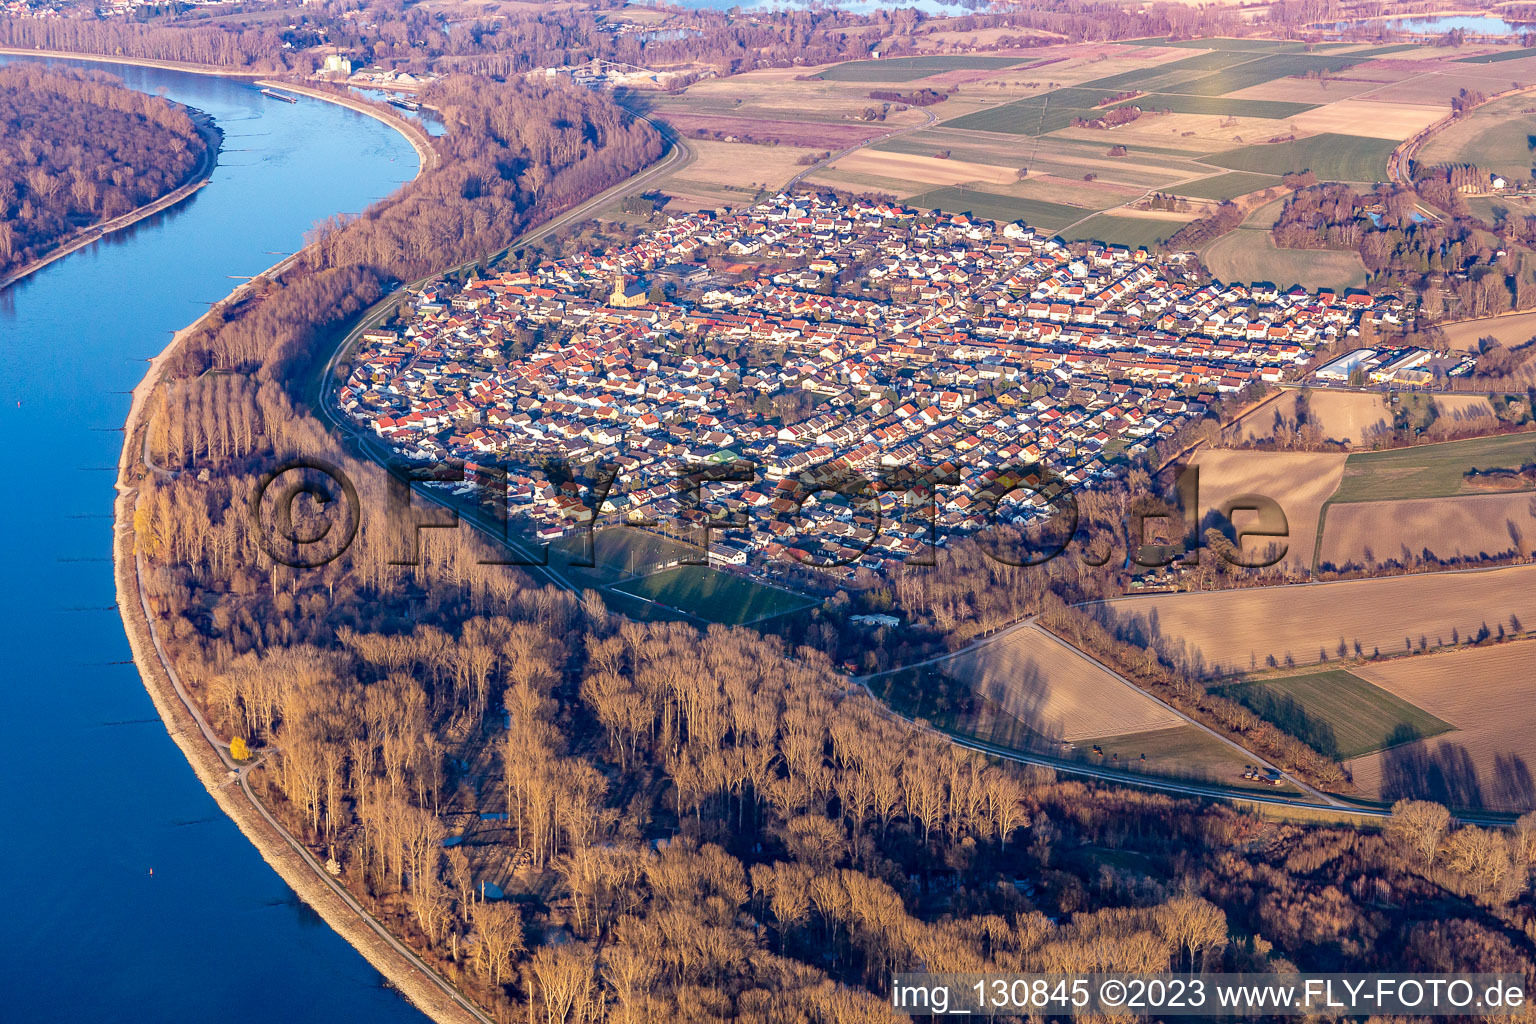 Oblique view of District Rheinhausen in Oberhausen-Rheinhausen in the state Baden-Wuerttemberg, Germany